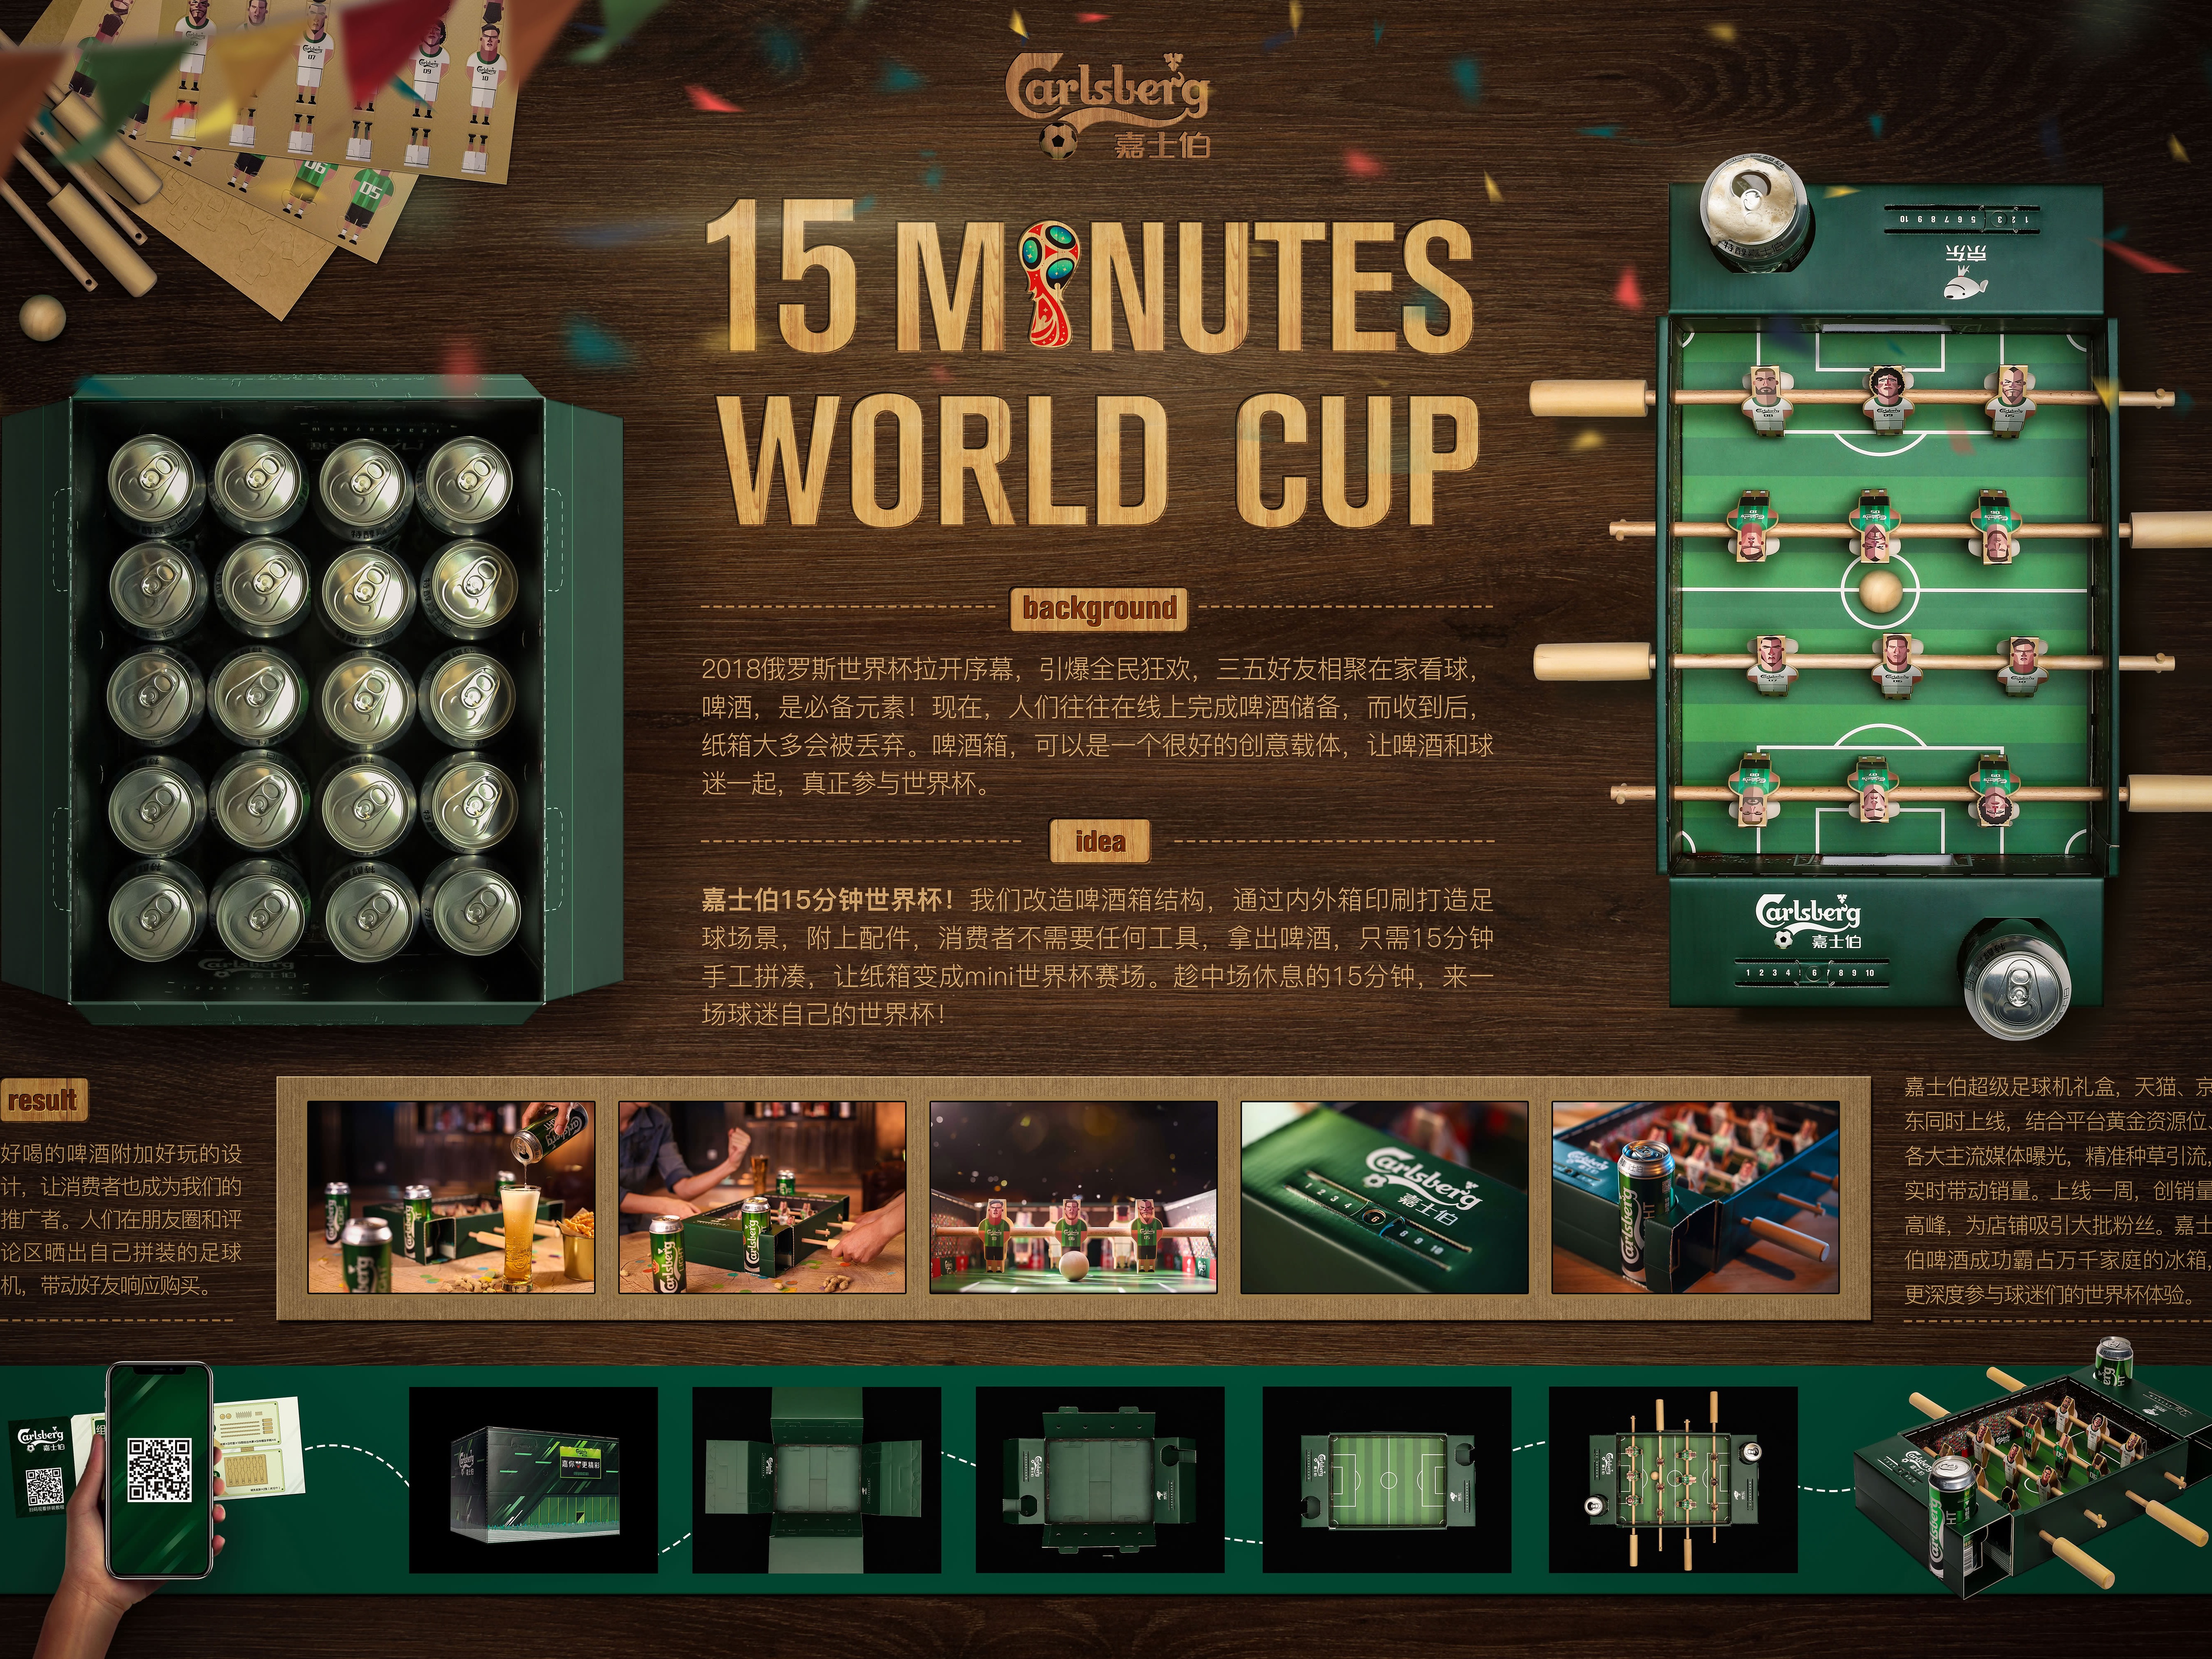 【嘉士伯15分钟世界杯 】/ 15 MINUTES WORLD CUP